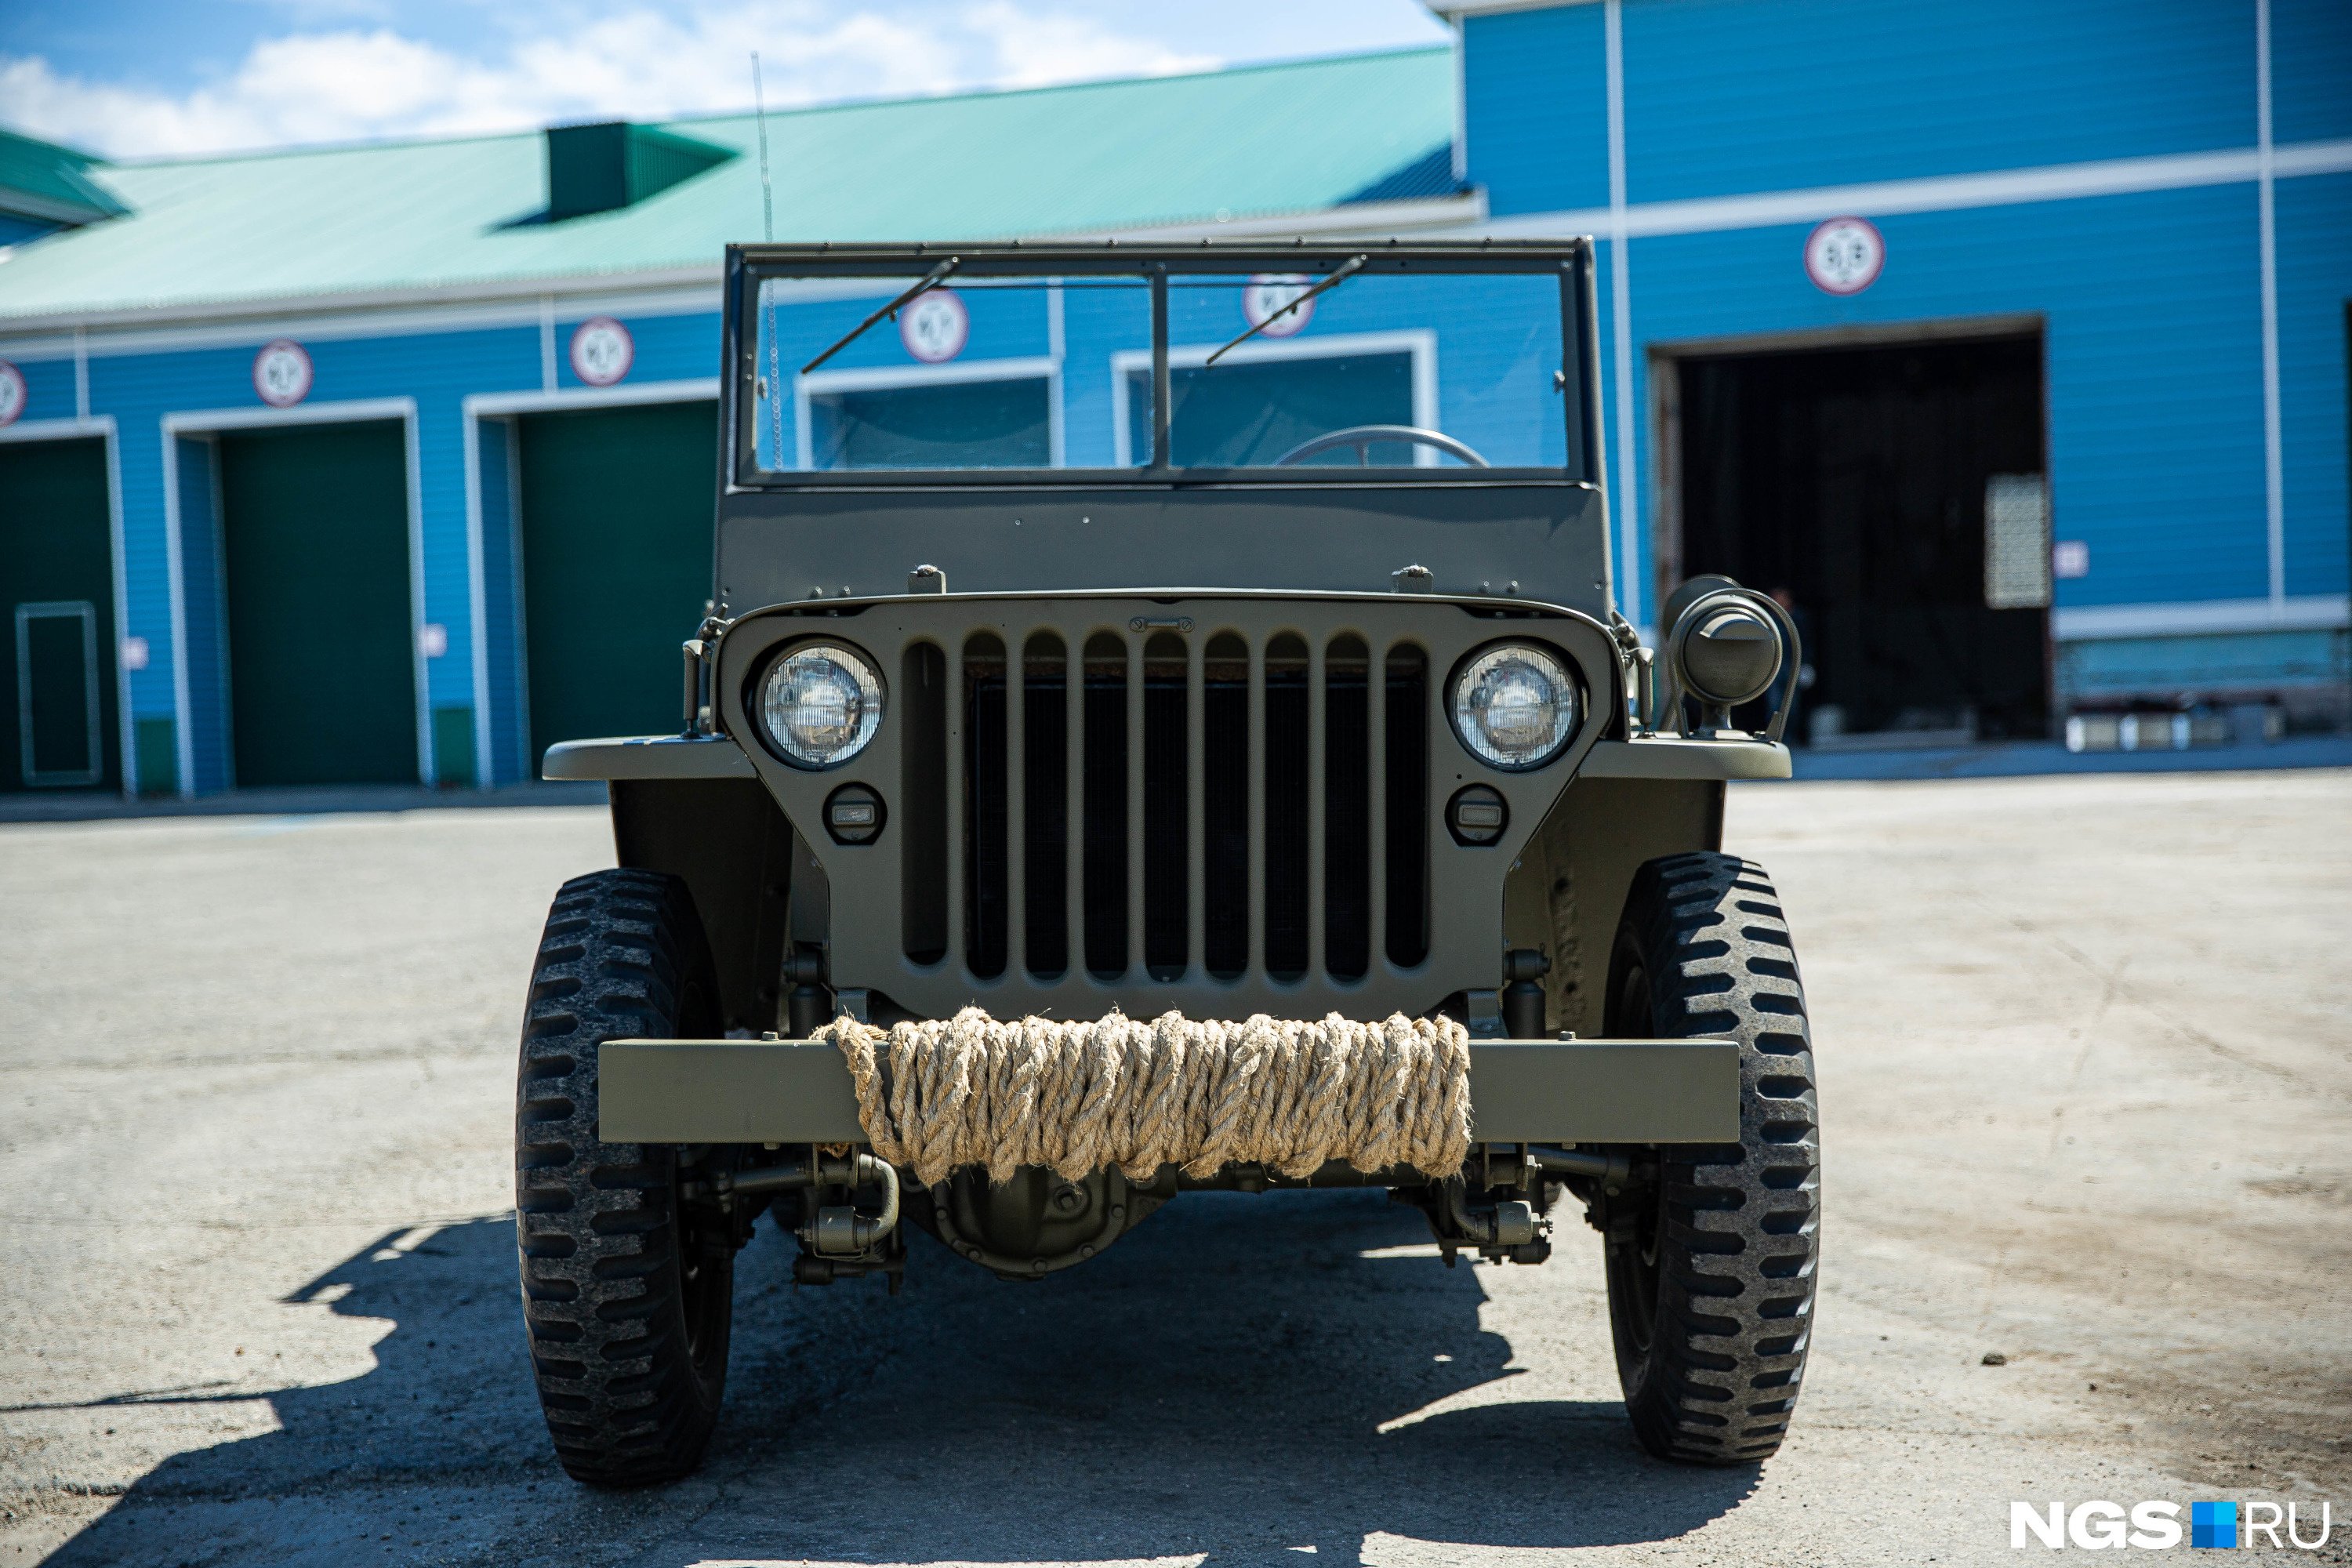 Willys MB был создан в 1940 году по заказу армии США